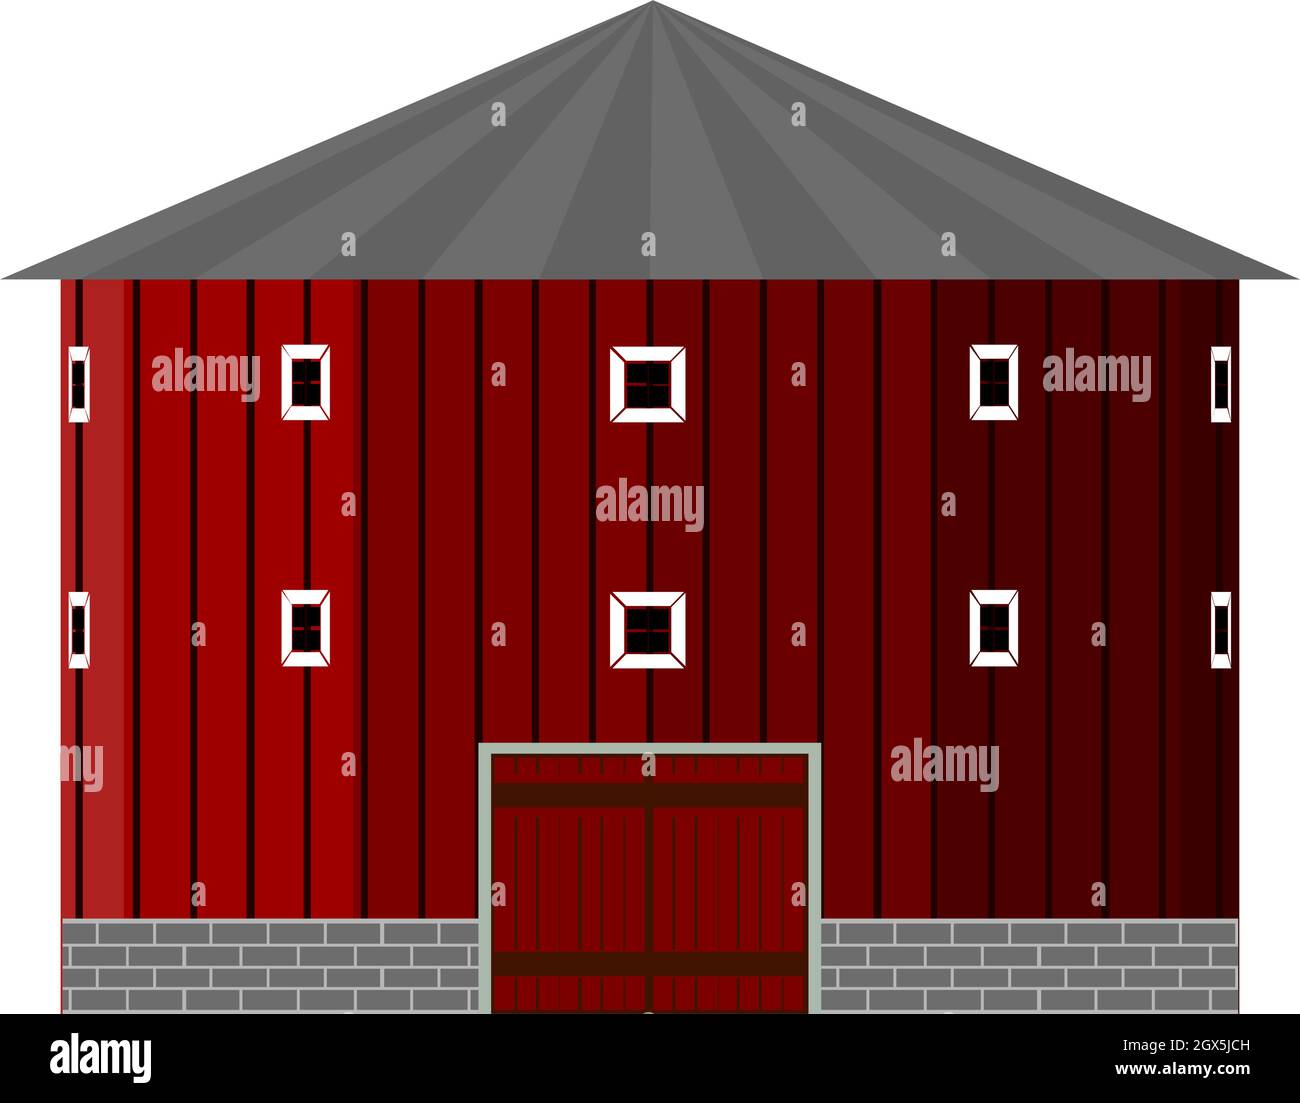 Kreisförmige rote Scheune Haus Illustration Vektor auf weißem Hintergrund Stock Vektor